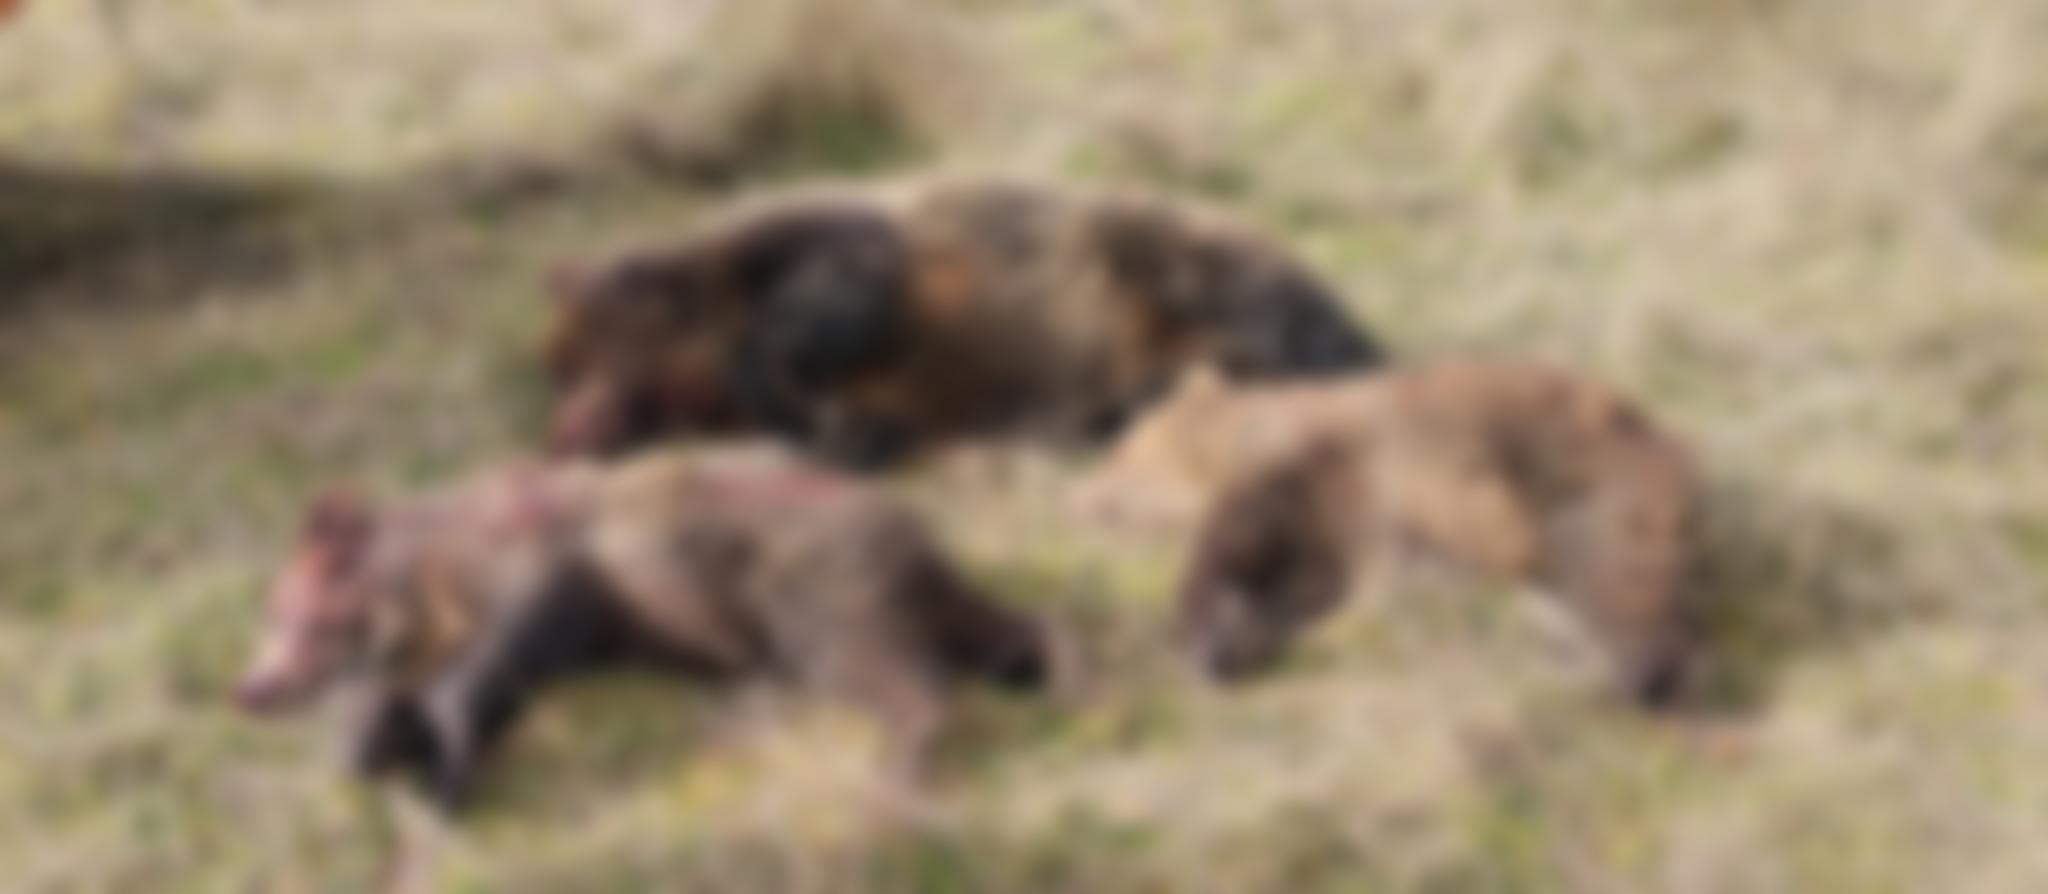 Στην δημοσιότητα βίντεο και φωτογραφίες από την εκτέλεση των αρκούδων. Ζητούν κυβερνητική δράση για τον εντοπισμό του δράστη (Σκληρές εικόνες)